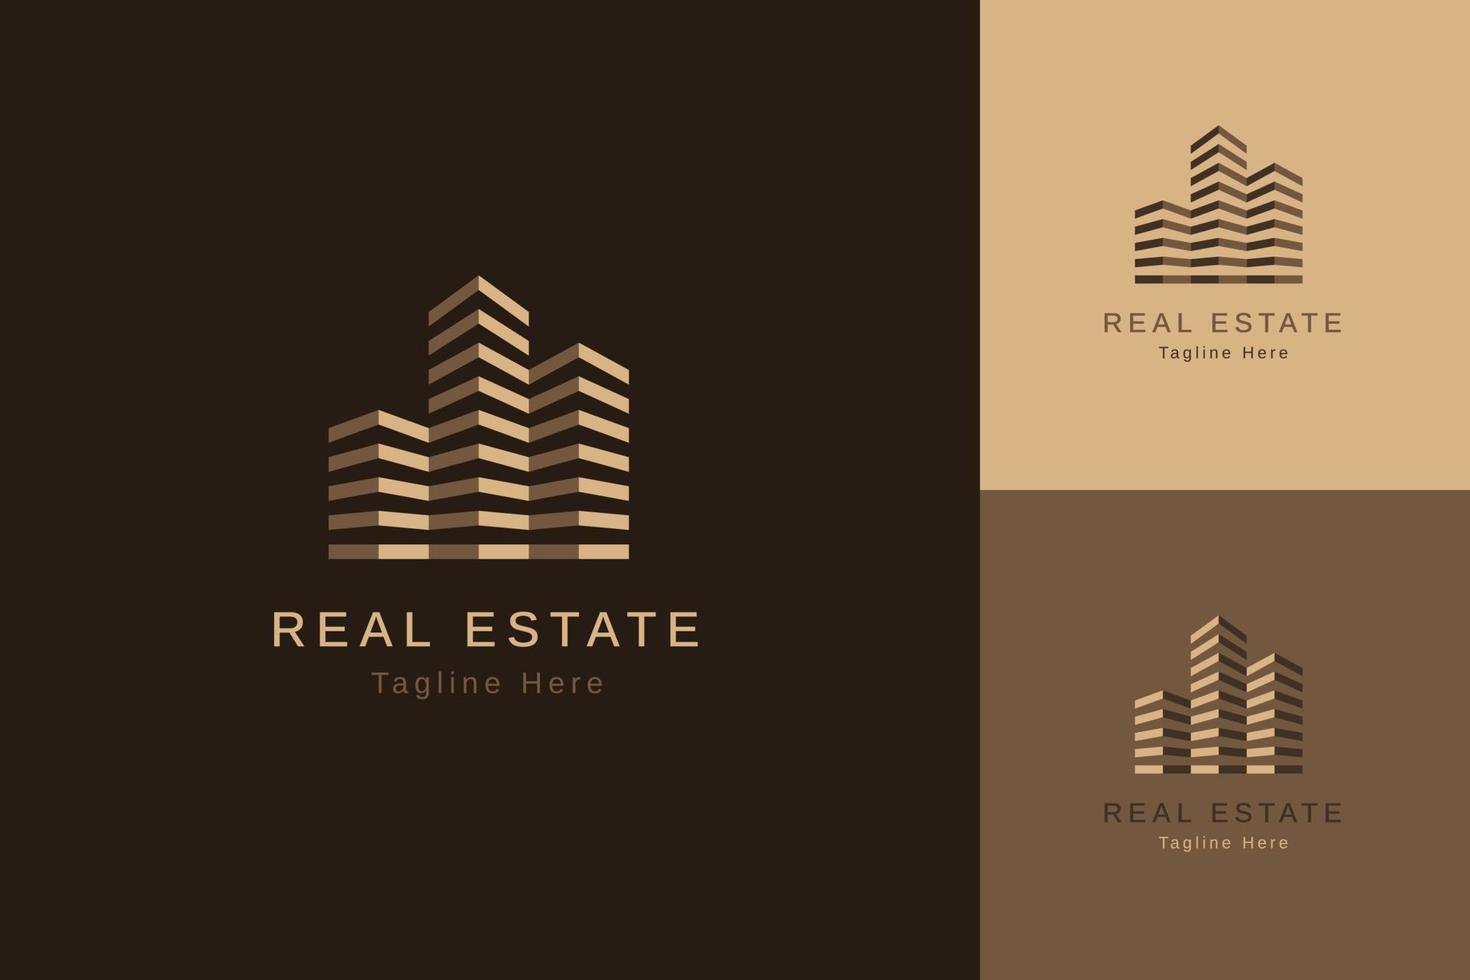 conjunto de modelo de design de vetor de logotipo de propriedade imobiliária com estilo de cor diferente